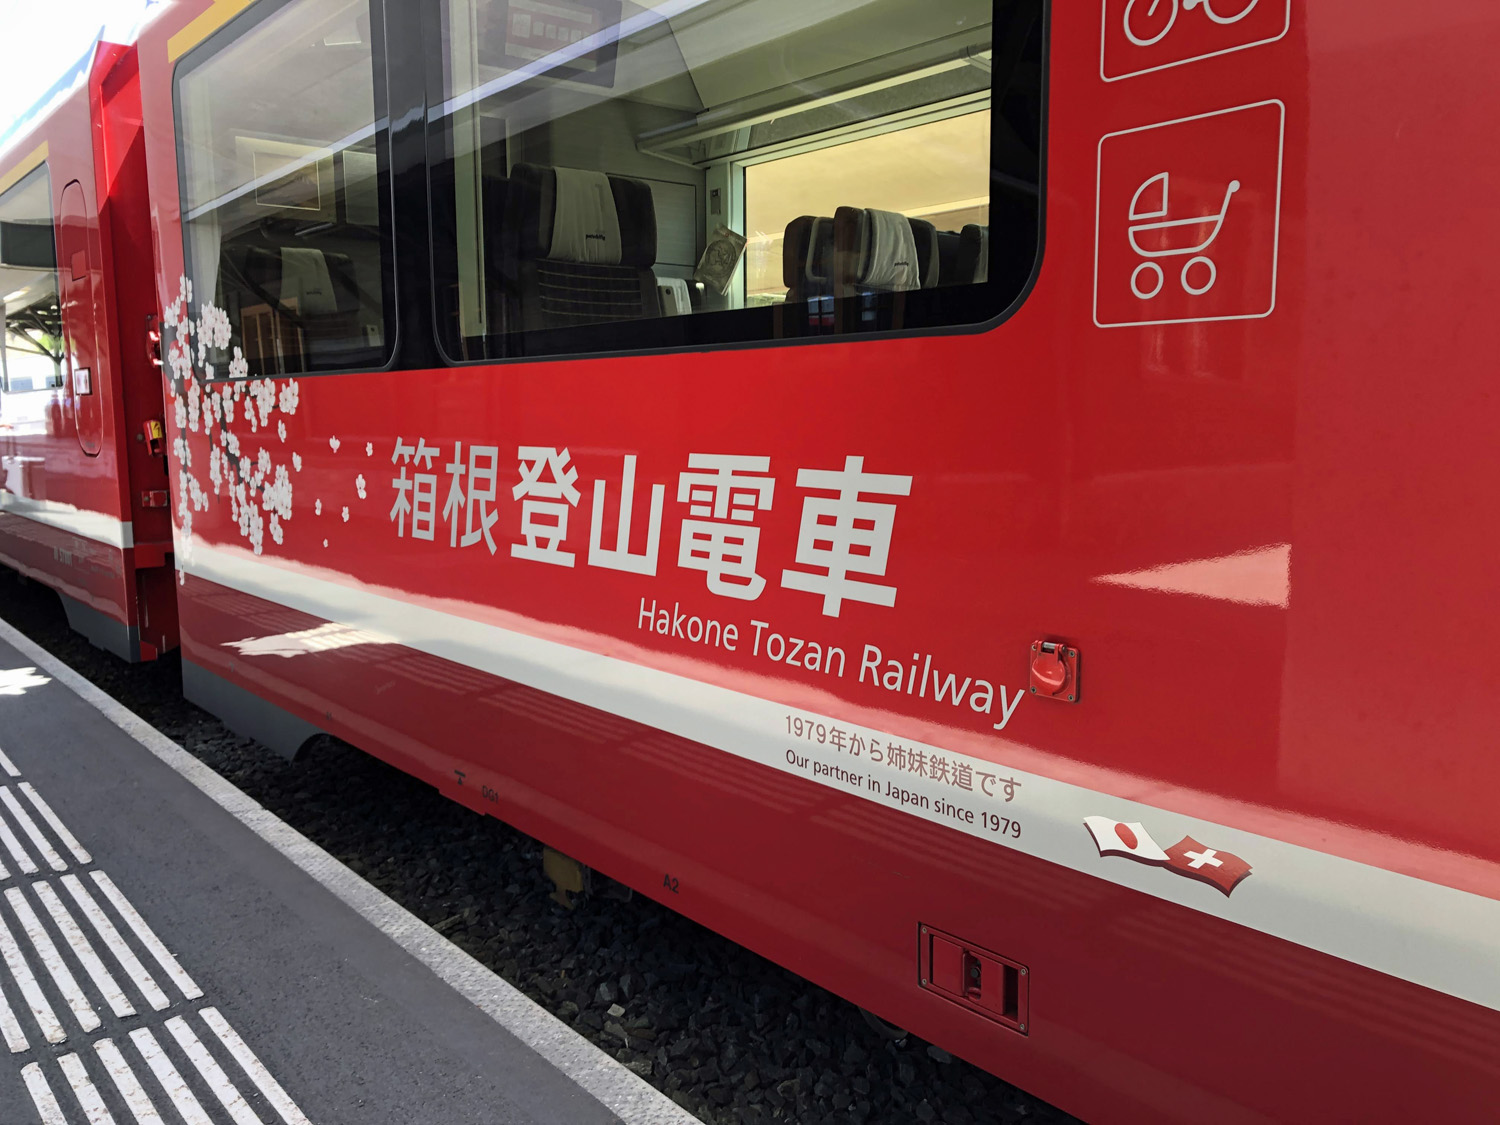 Japan In Der Schweiz Entdecken Asienspiegel